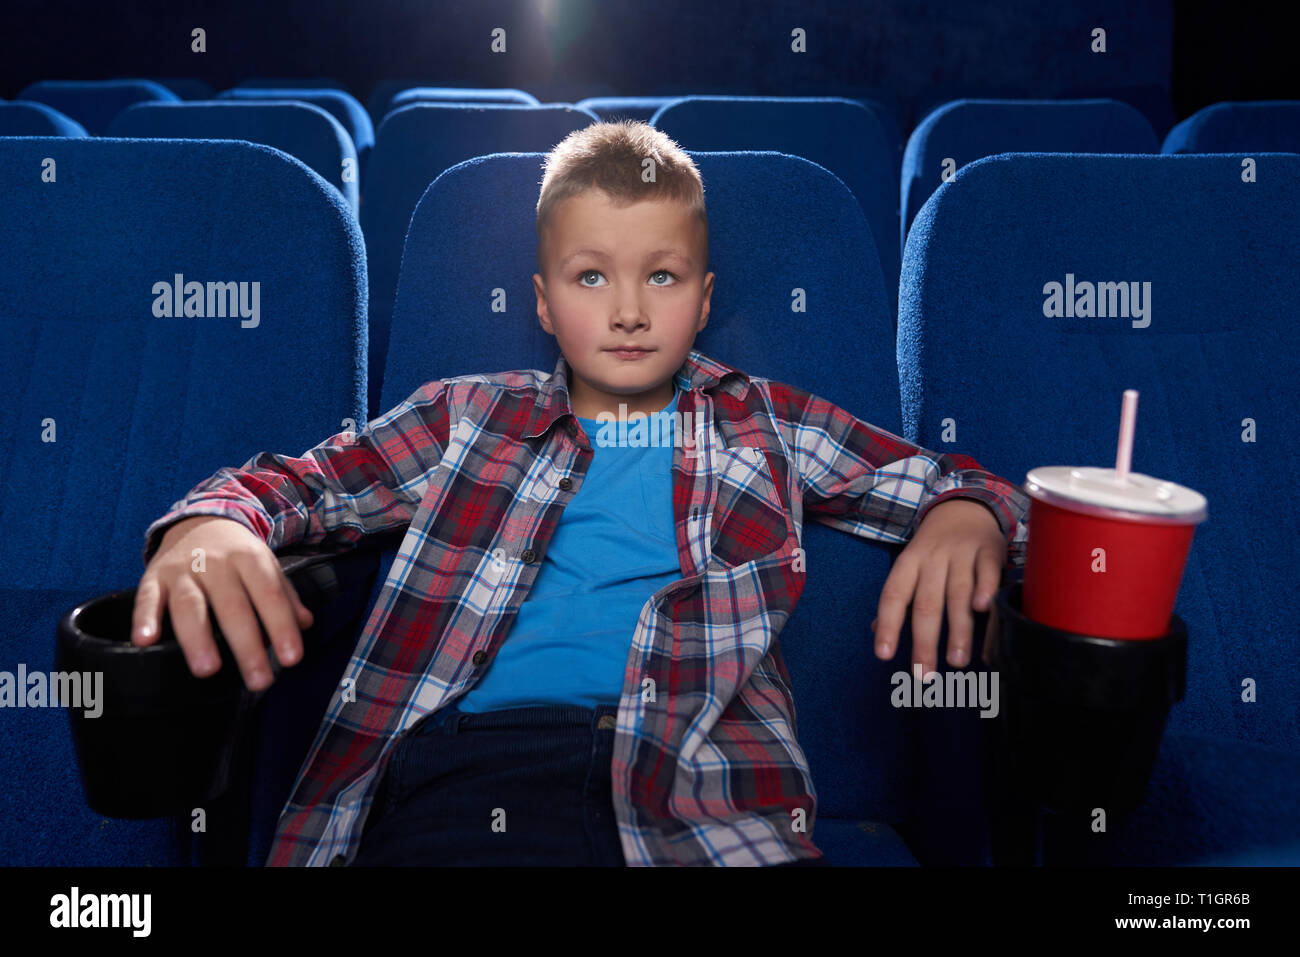 Junge sitzt im gemütlichen Sessel im Kino Theater, Film aufmerksam zu beobachten. Kid mit Film oder ein Cartoon, rot Pappbecher mit Kohlensäure trinken. Unterhaltung Konzept. Stockfoto